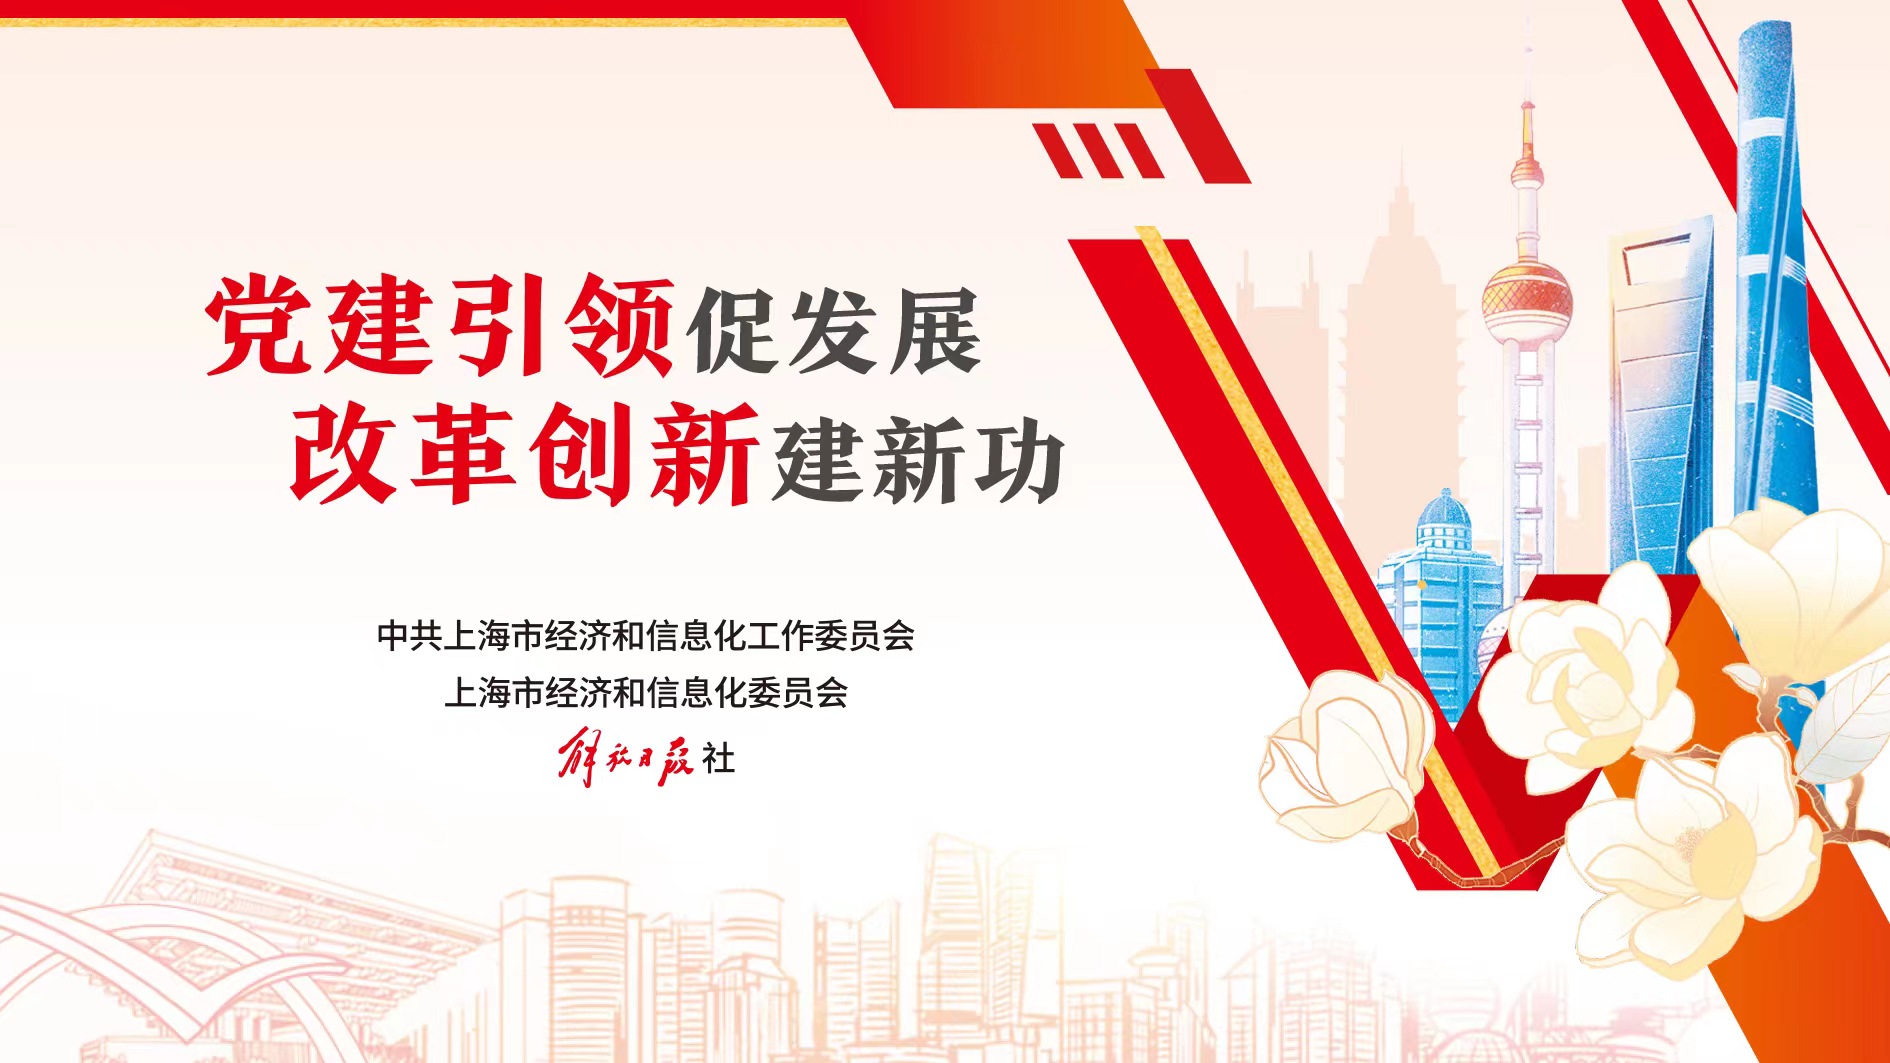 改革创新建新功 | 中国石化销售上海石油：为城市美好生活综合赋能